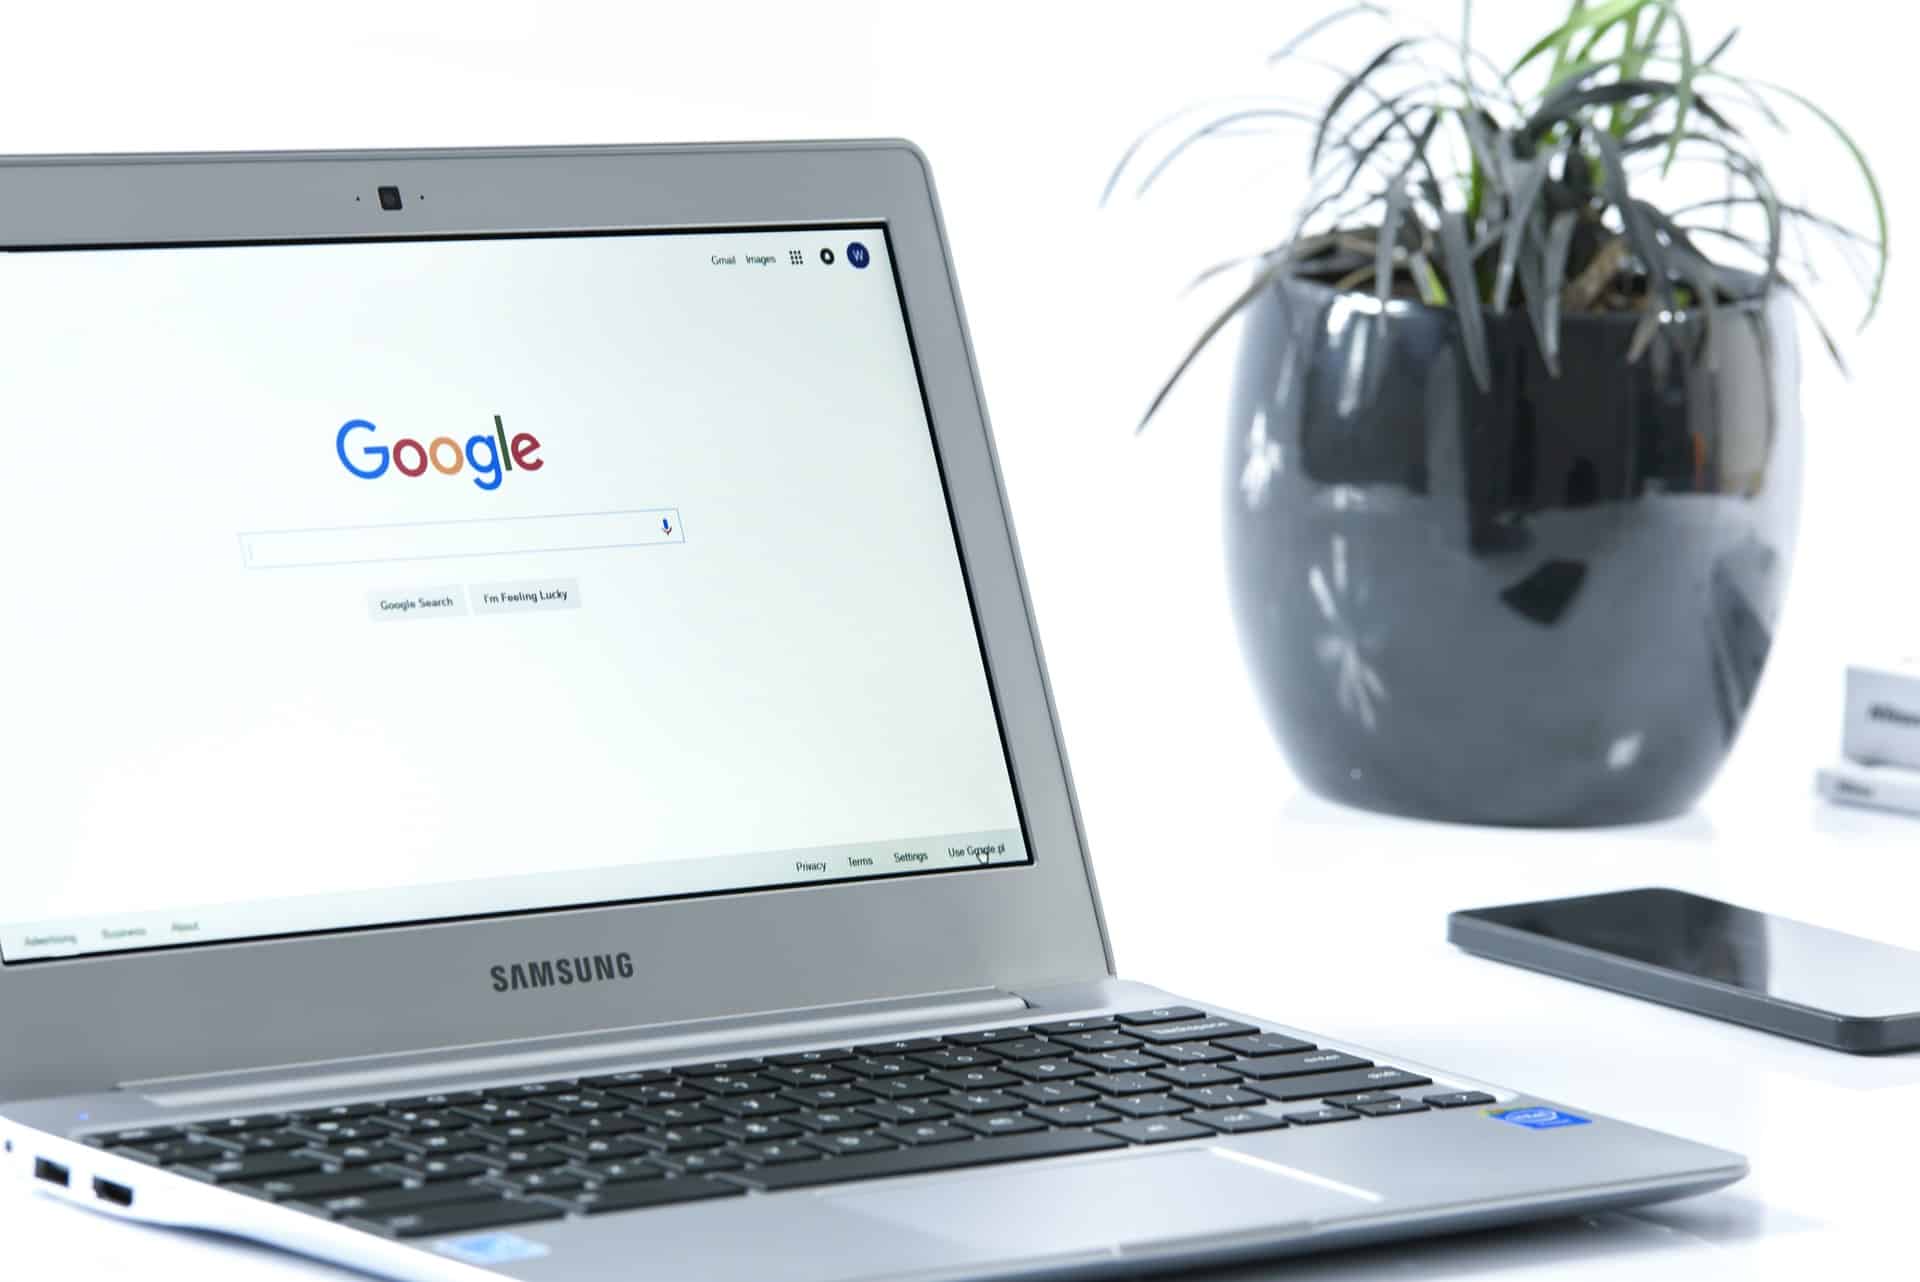 Ein Laptop auf dem Schreibtisch - der aufgeklappte Bildschirm zeigt ein Google Suchfeld. Beispiel für SEO Keyword Recherche.